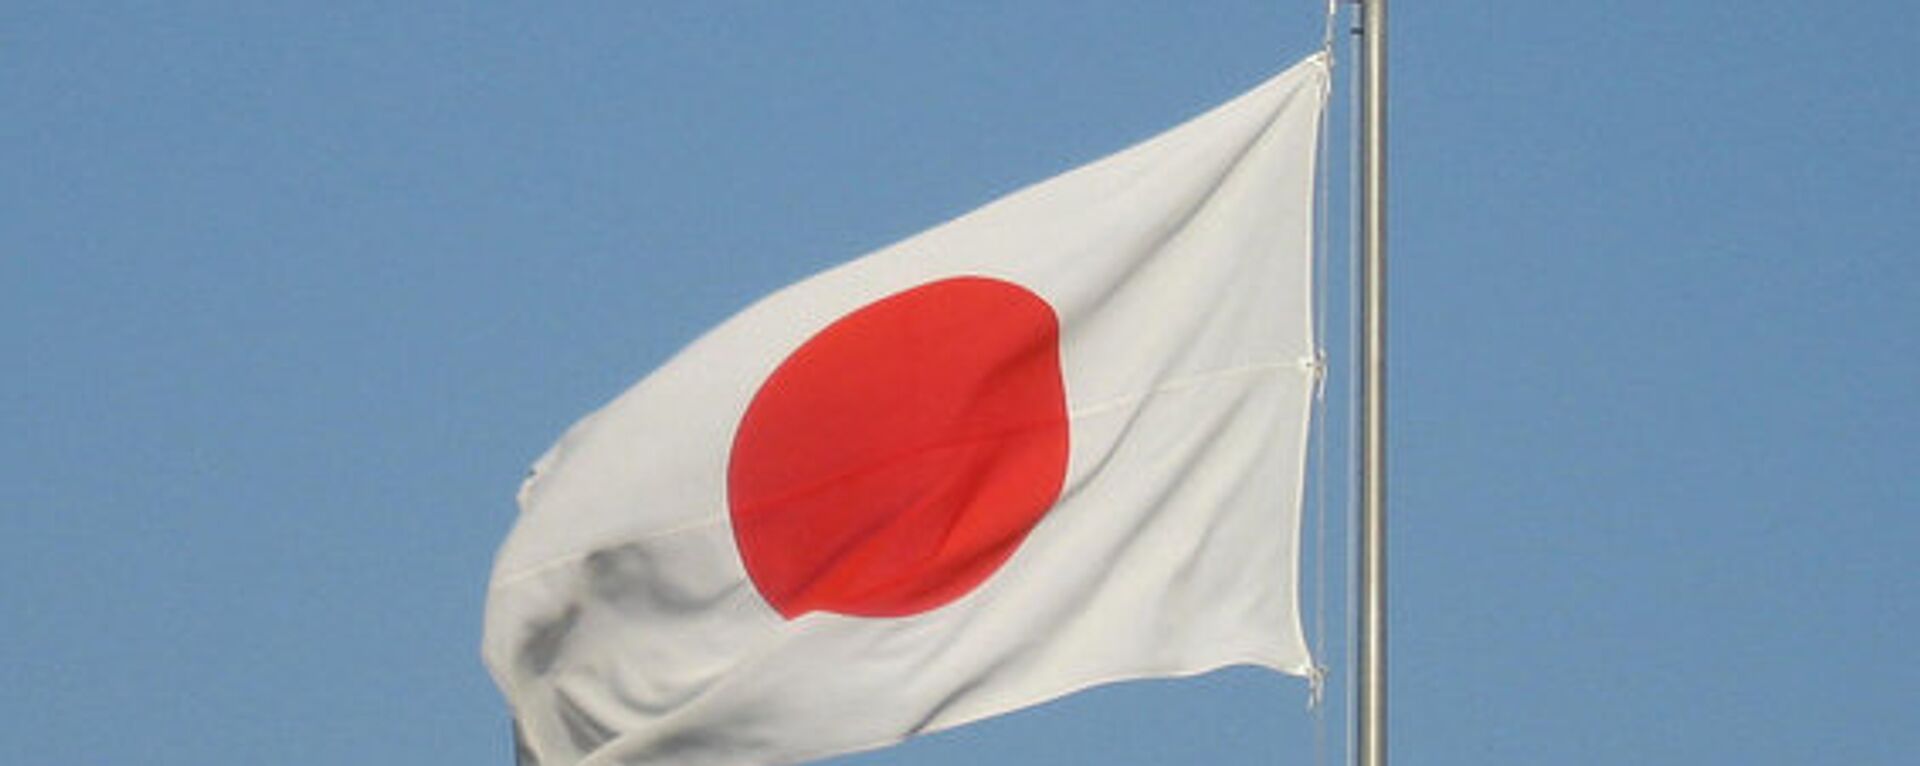 日本の国旗 - Sputnik 日本, 1920, 11.02.2022